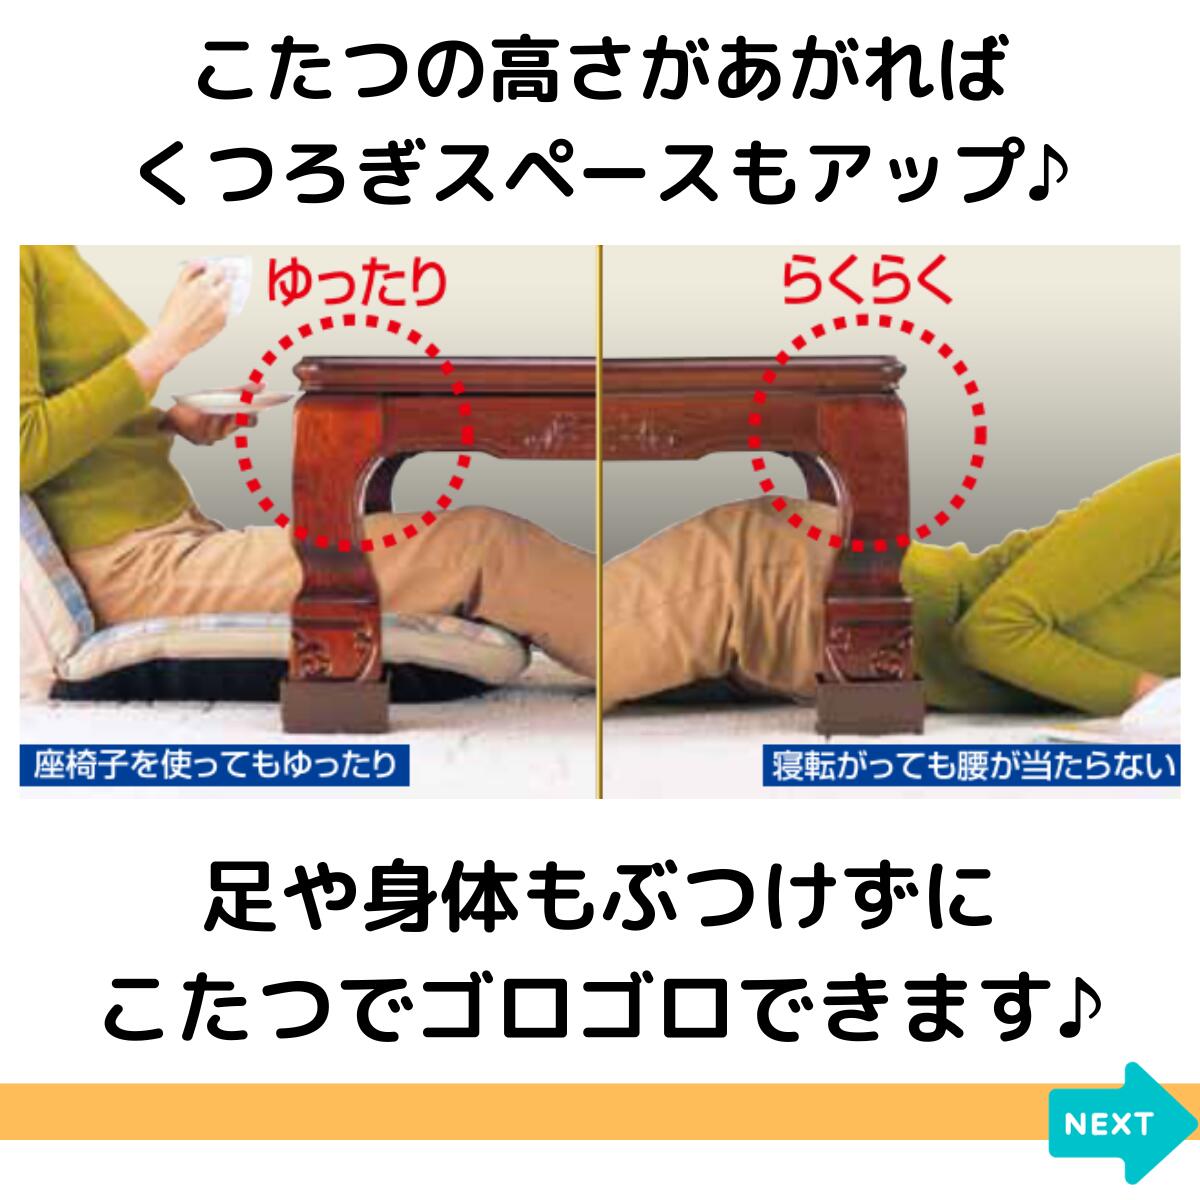  котацу. высота .... пара jumbo 4 штук входит бежевый Brown стол ножек высота настройка kotatsu высота регулировка .. пара низ вверх высота . делать высота повышать сделано в Японии ....